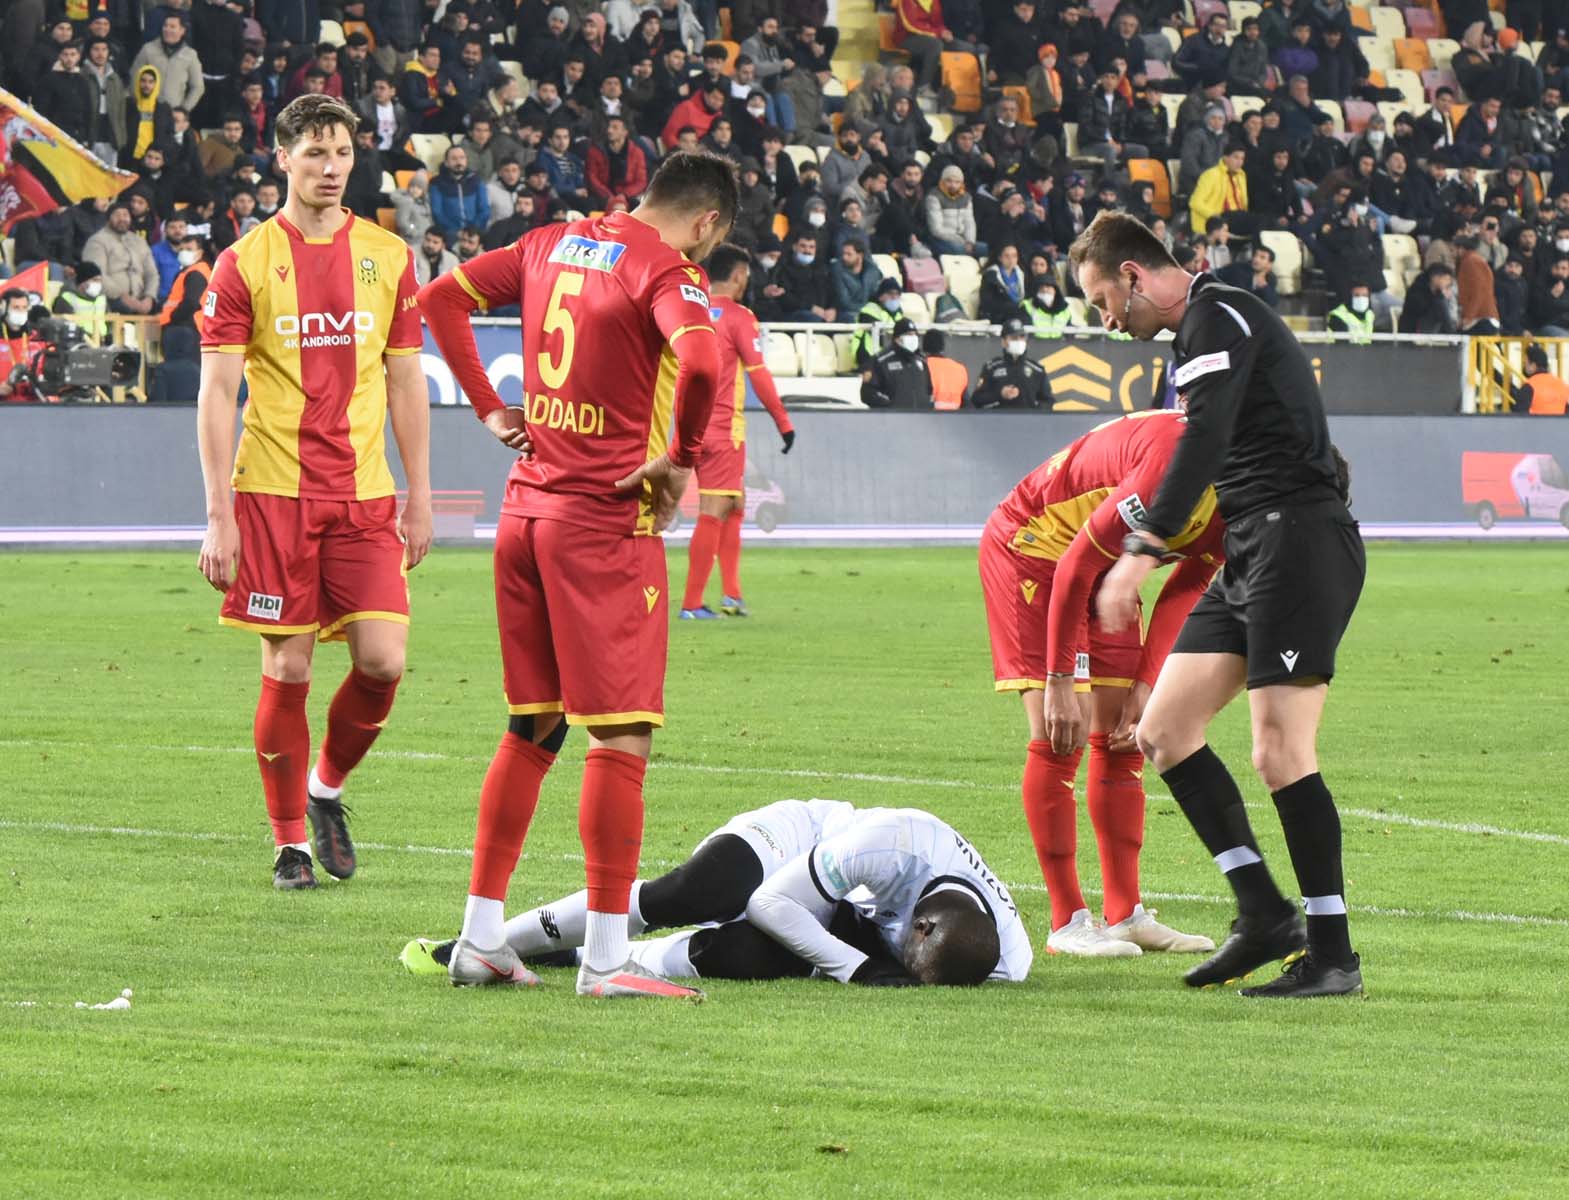 Yeni Malatyaspor 1– 0 Adana Demirspor |Maç sonucu, özeti 